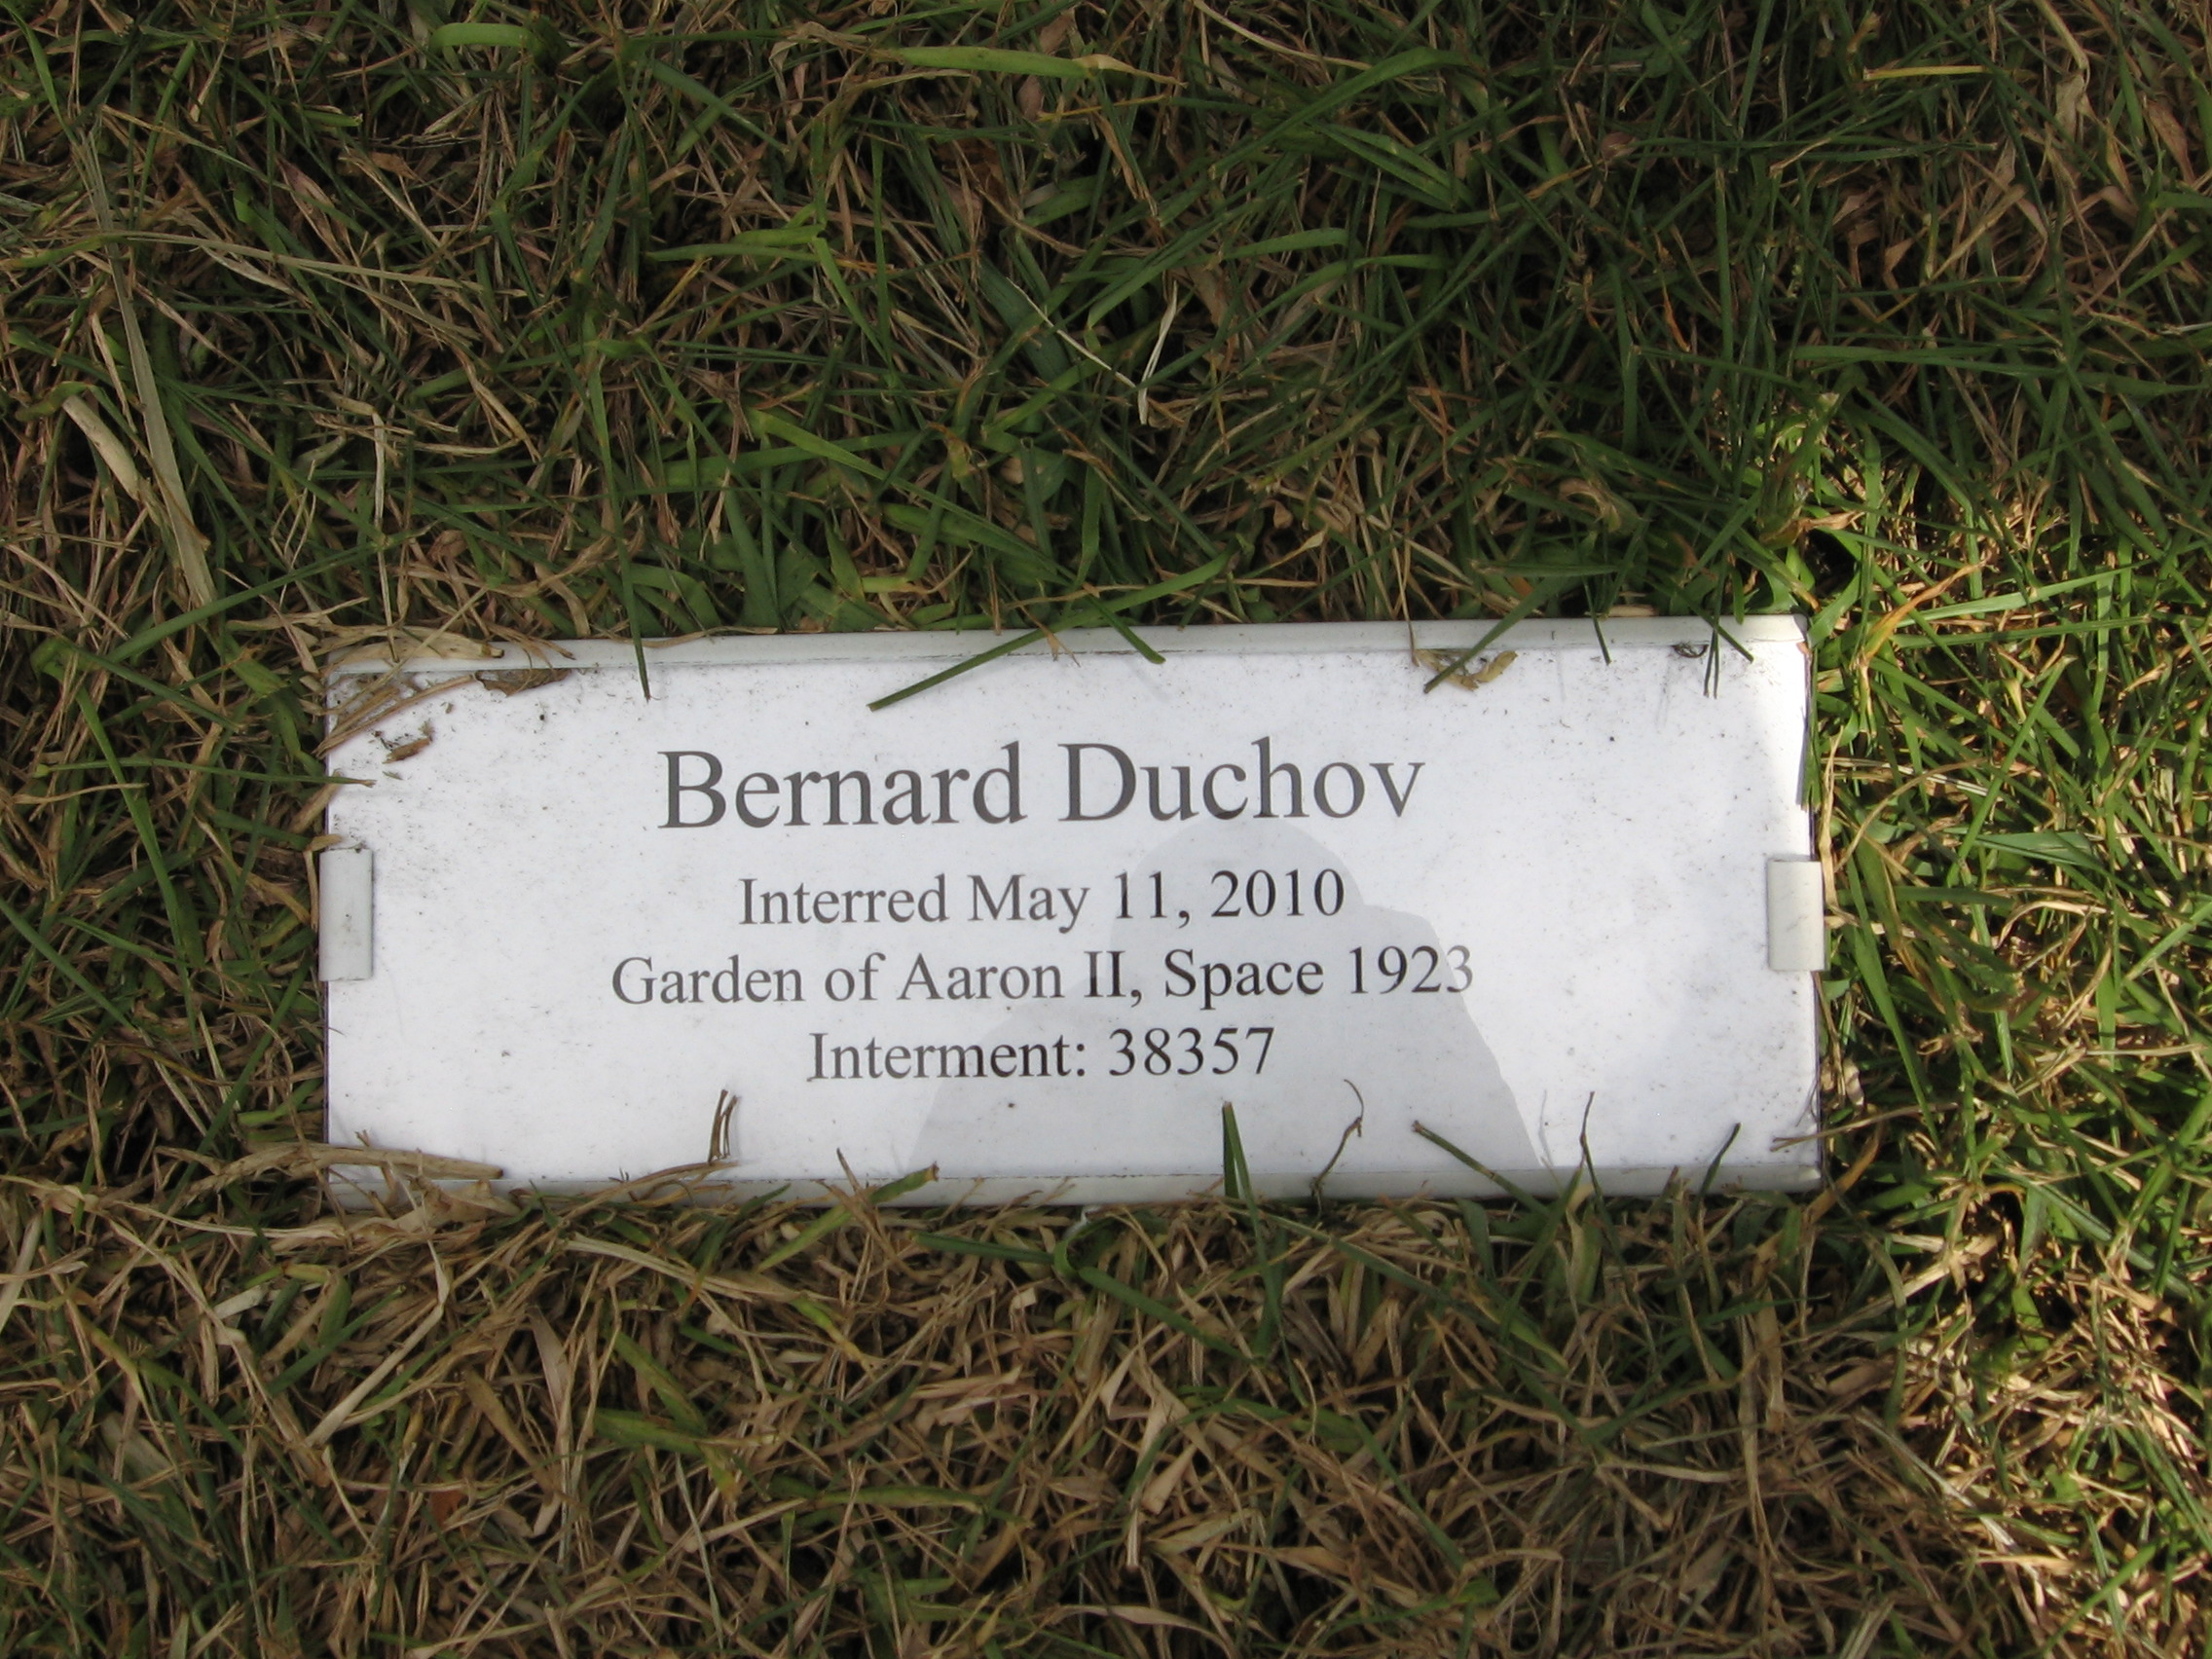 Bernard Duchov